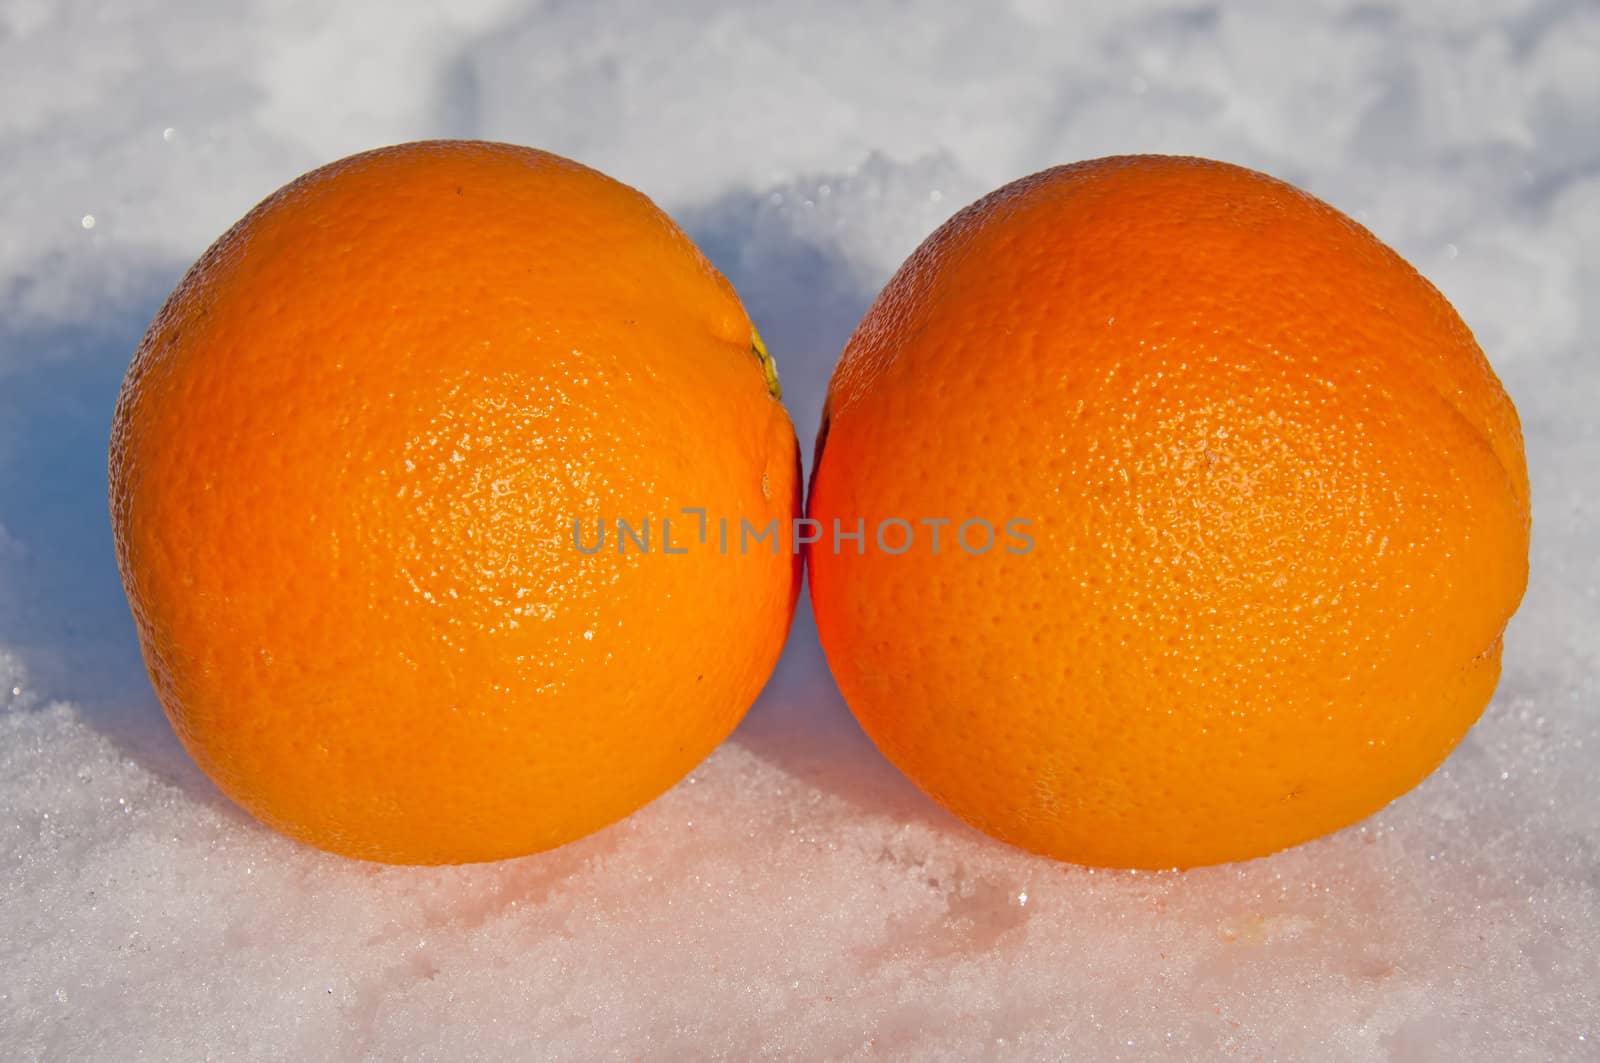 Oranges in snow by GryT